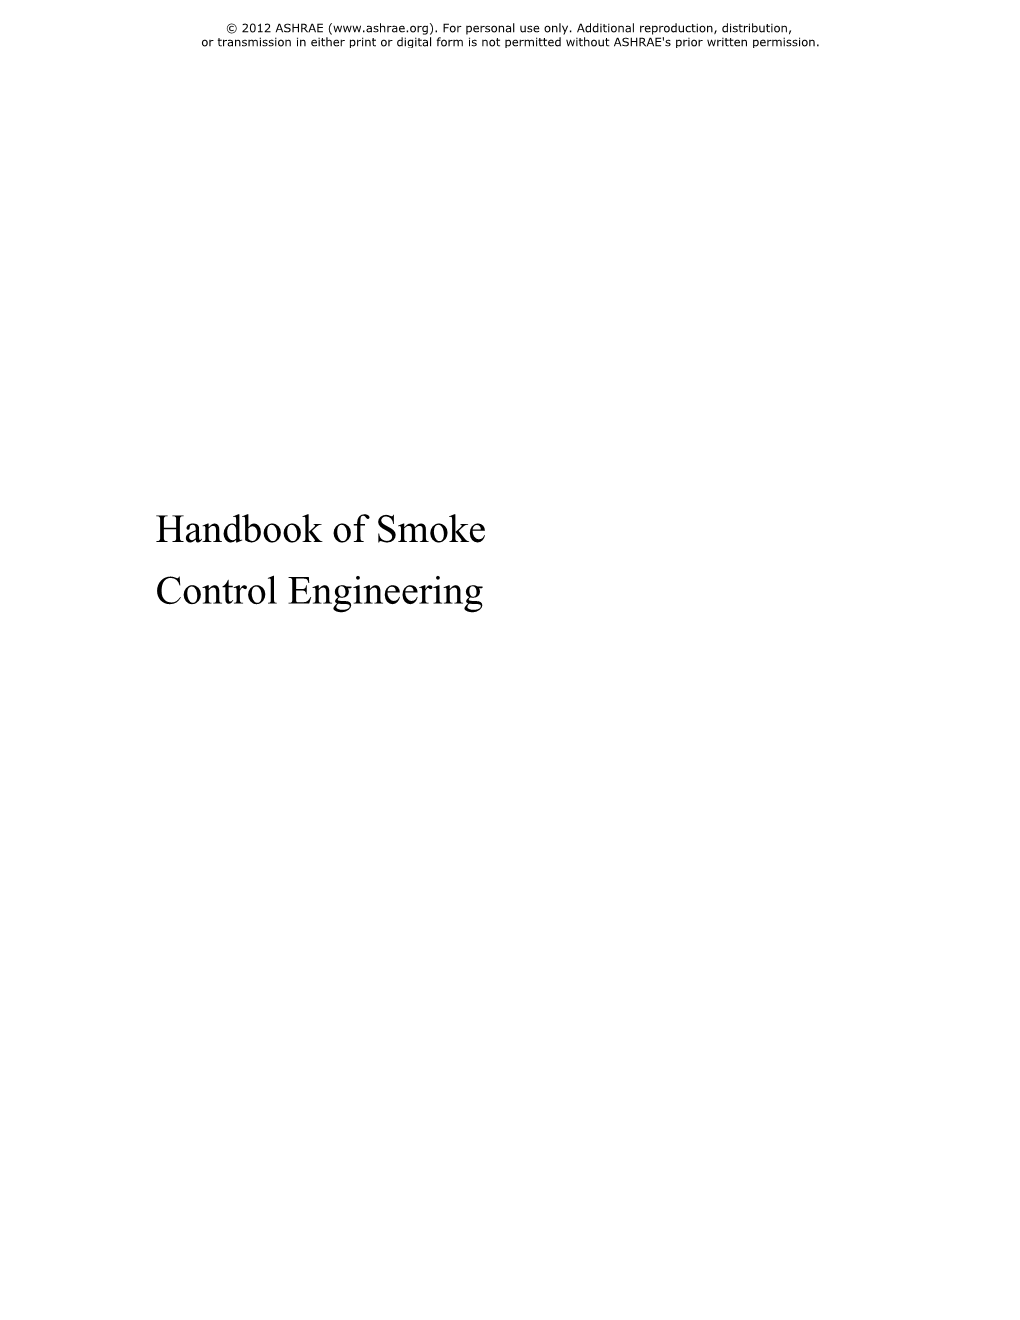 Handbook of Smoke Control Engineering © 2012 ASHRAE (